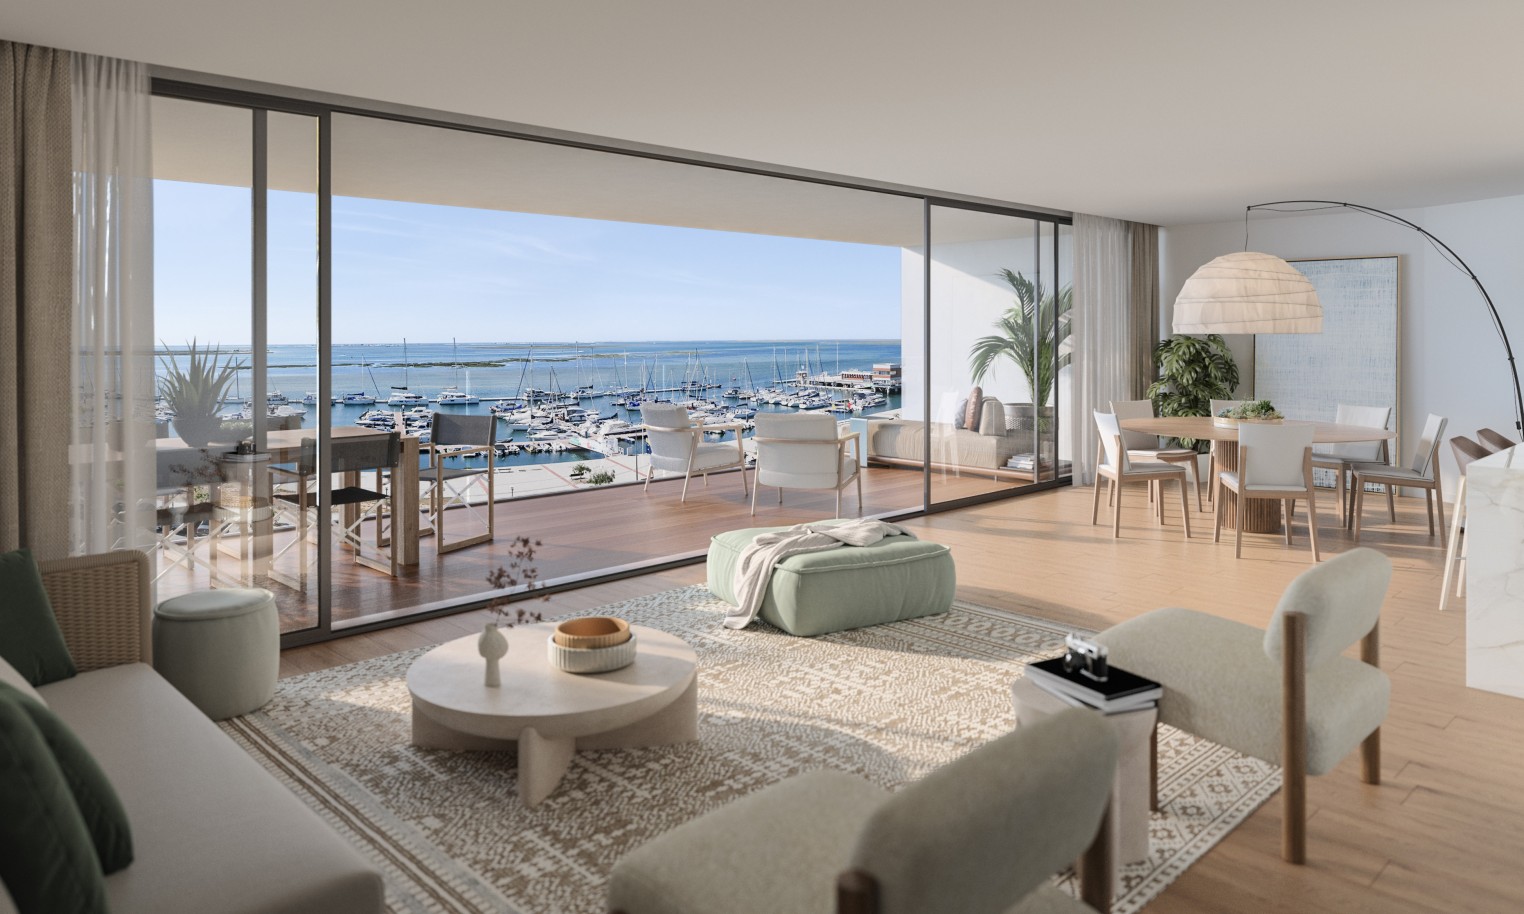 Appartements neufs avec vue sur mer, 1, 2 & 3 chambres, à vendre à Olhão, Algarve_244597